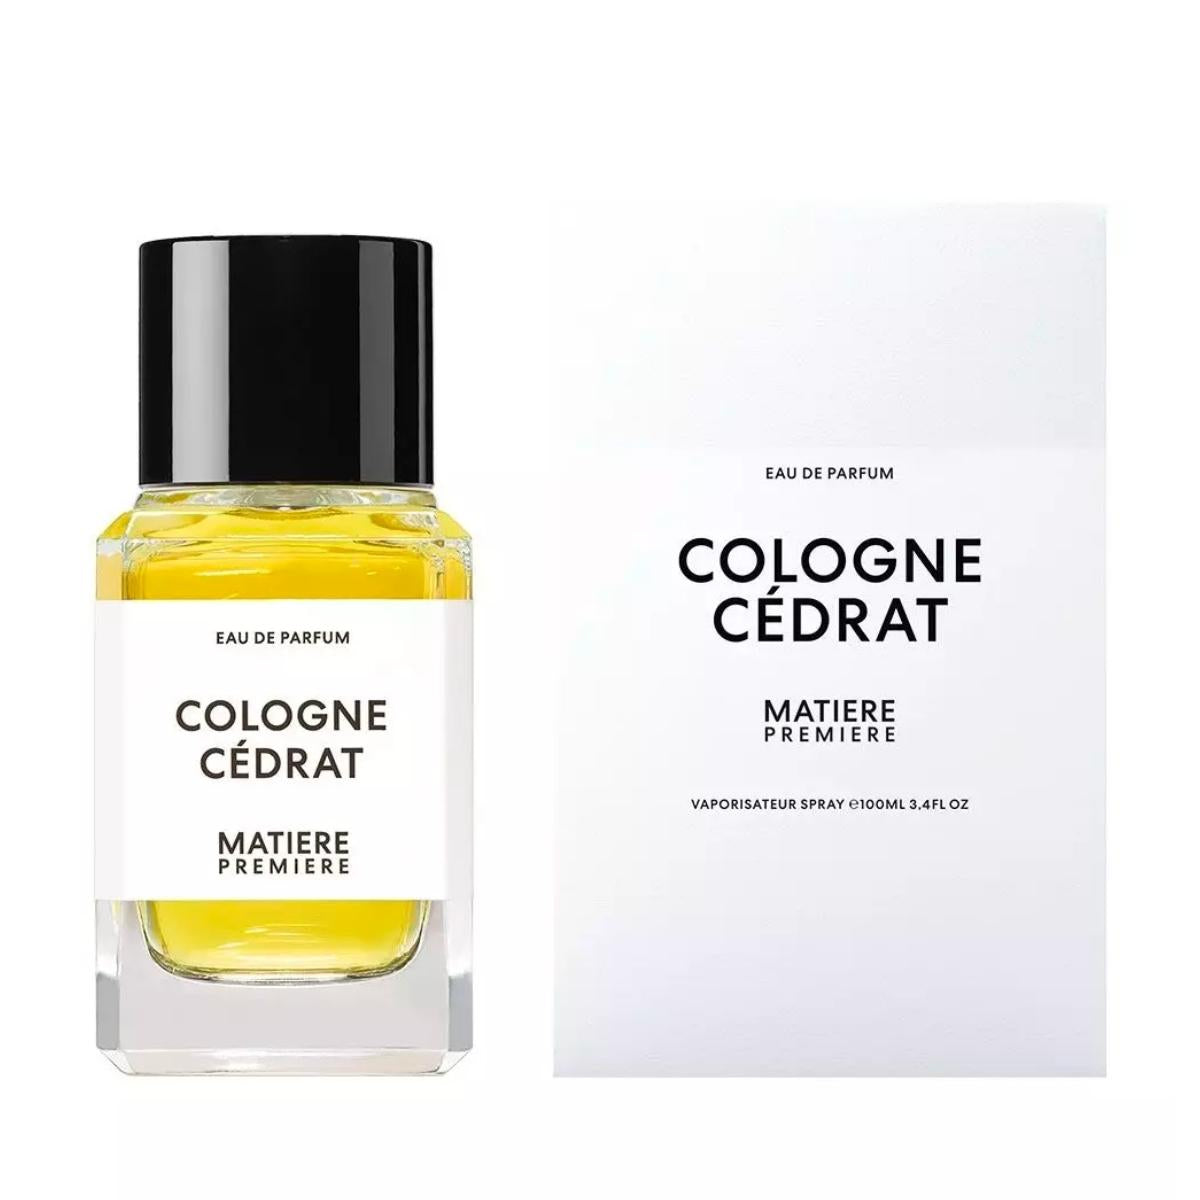 Matiere Premiere Cologne Cedrat - Eau de Parfum Unisex Fragrance